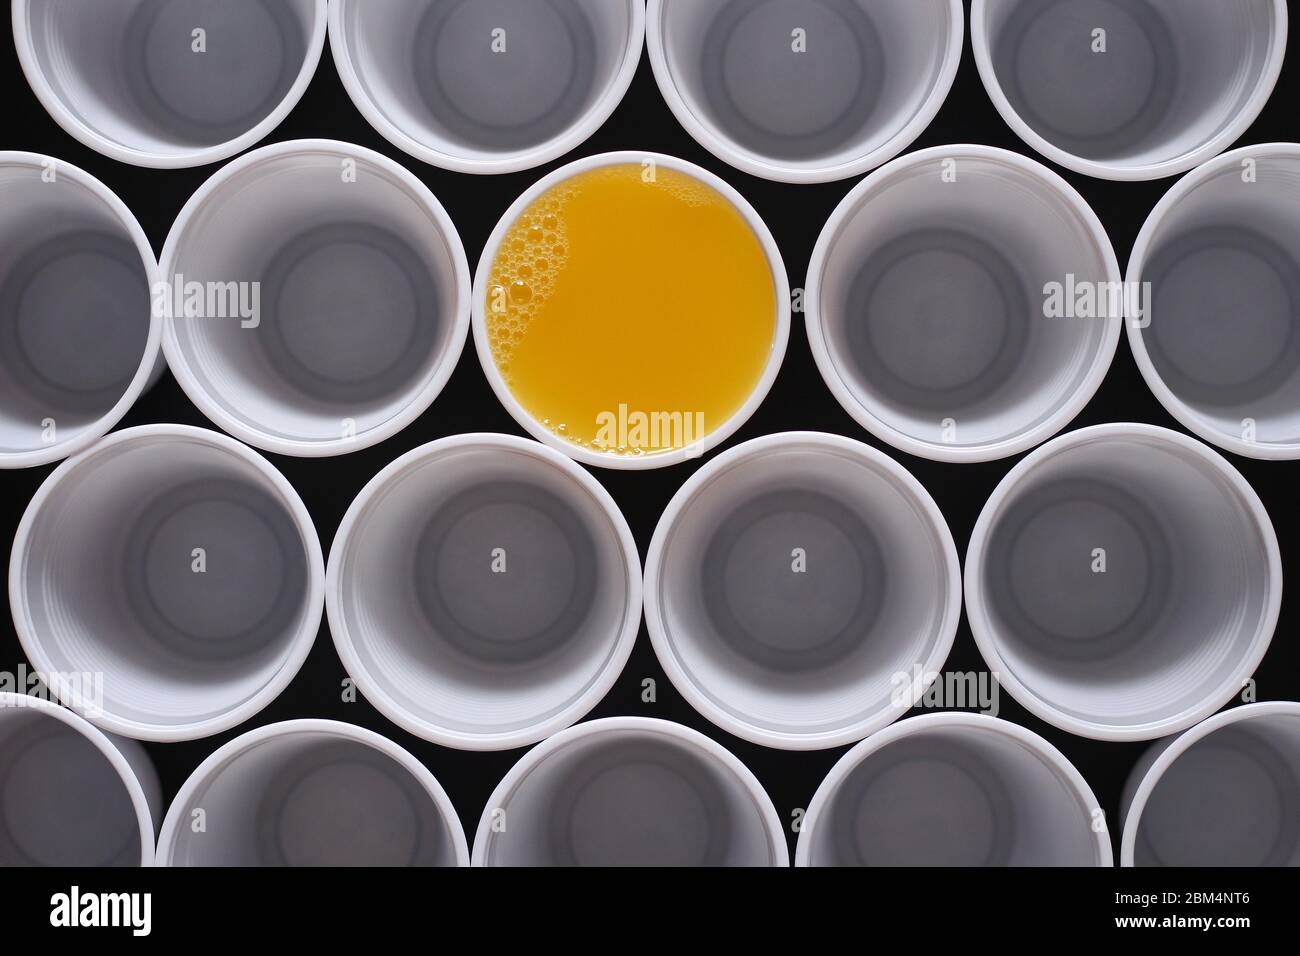 Succo d'arancia. Molte tazze monouso in plastica, una è riempita con succo d'arancia visto dall'alto. Foto Stock